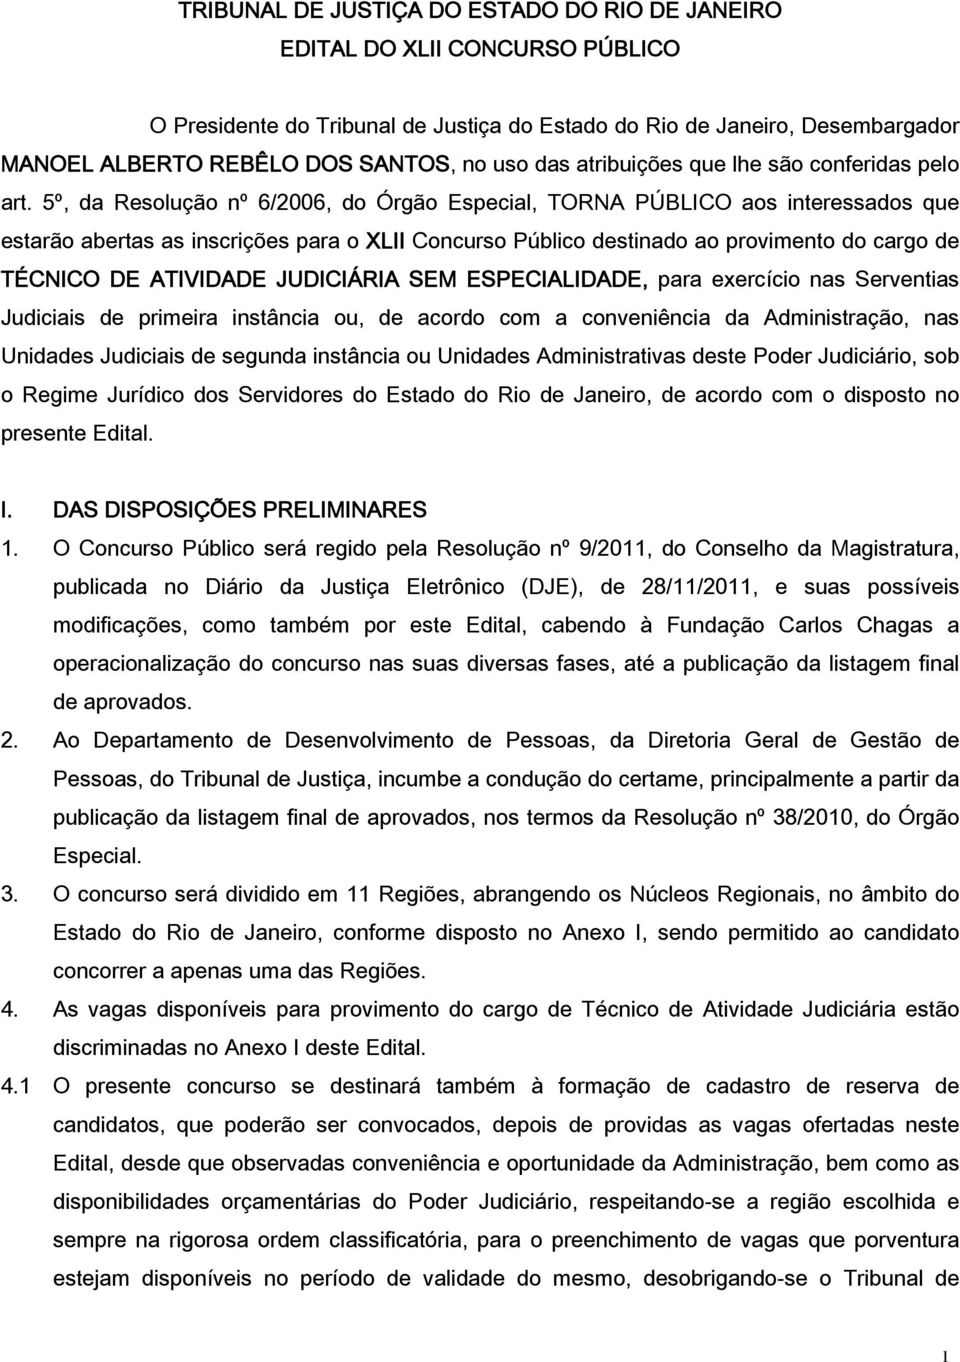 5º, da Resolução nº 6/2006, do Órgão Especial, TORNA PÚBLICO aos interessados que estarão abertas as inscrições para o XLII Concurso Público destinado ao provimento do cargo de TÉCNICO DE ATIVIDADE